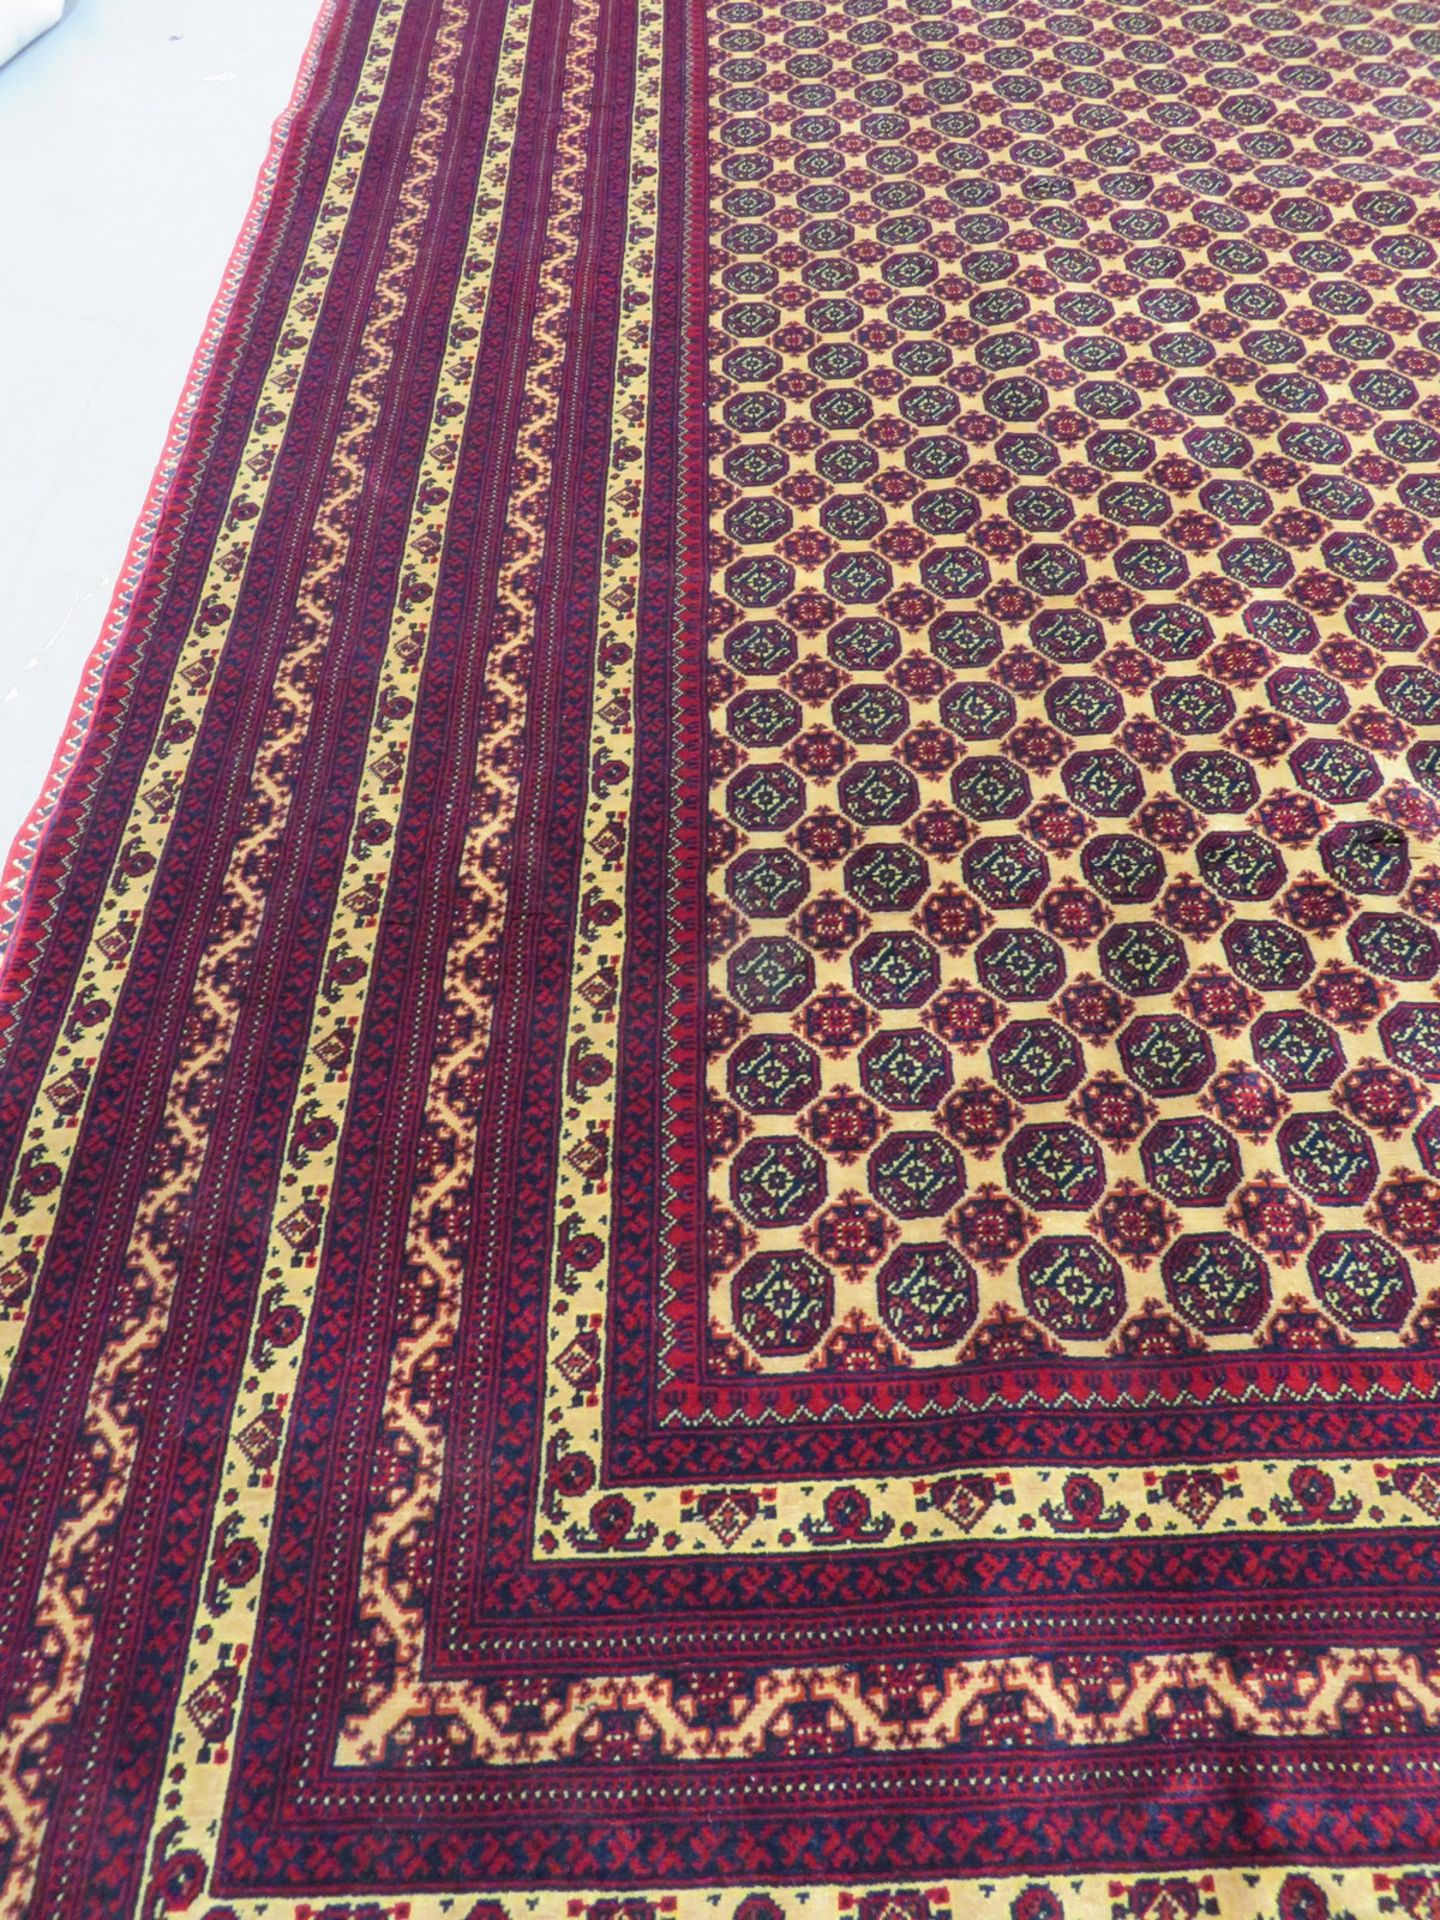 Khal Mohammadi 'Khawaja Roshnai' Afghan rug measures 3.5m L x 2.5m W - Image 5 of 13